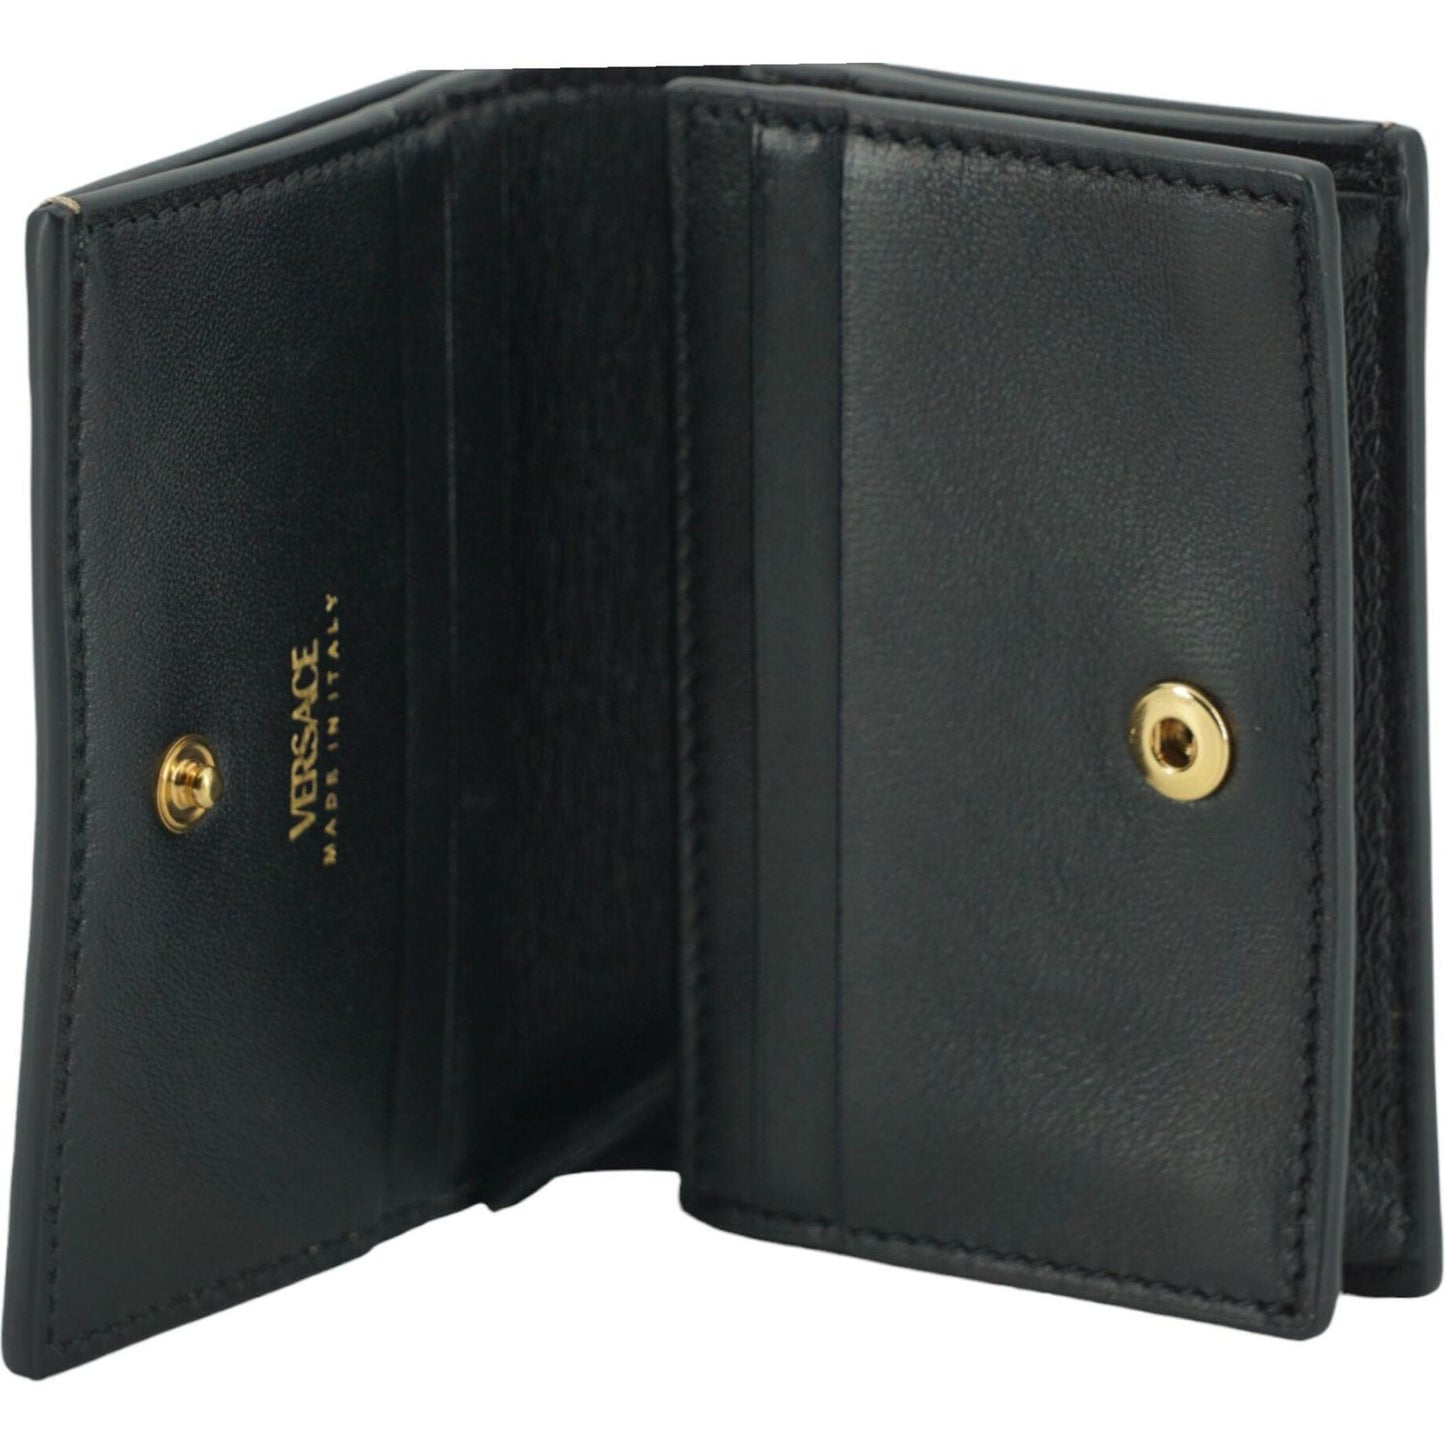 Versace | Elegant Compact Leather Wallet in Brown| McRichard Designer Brands   